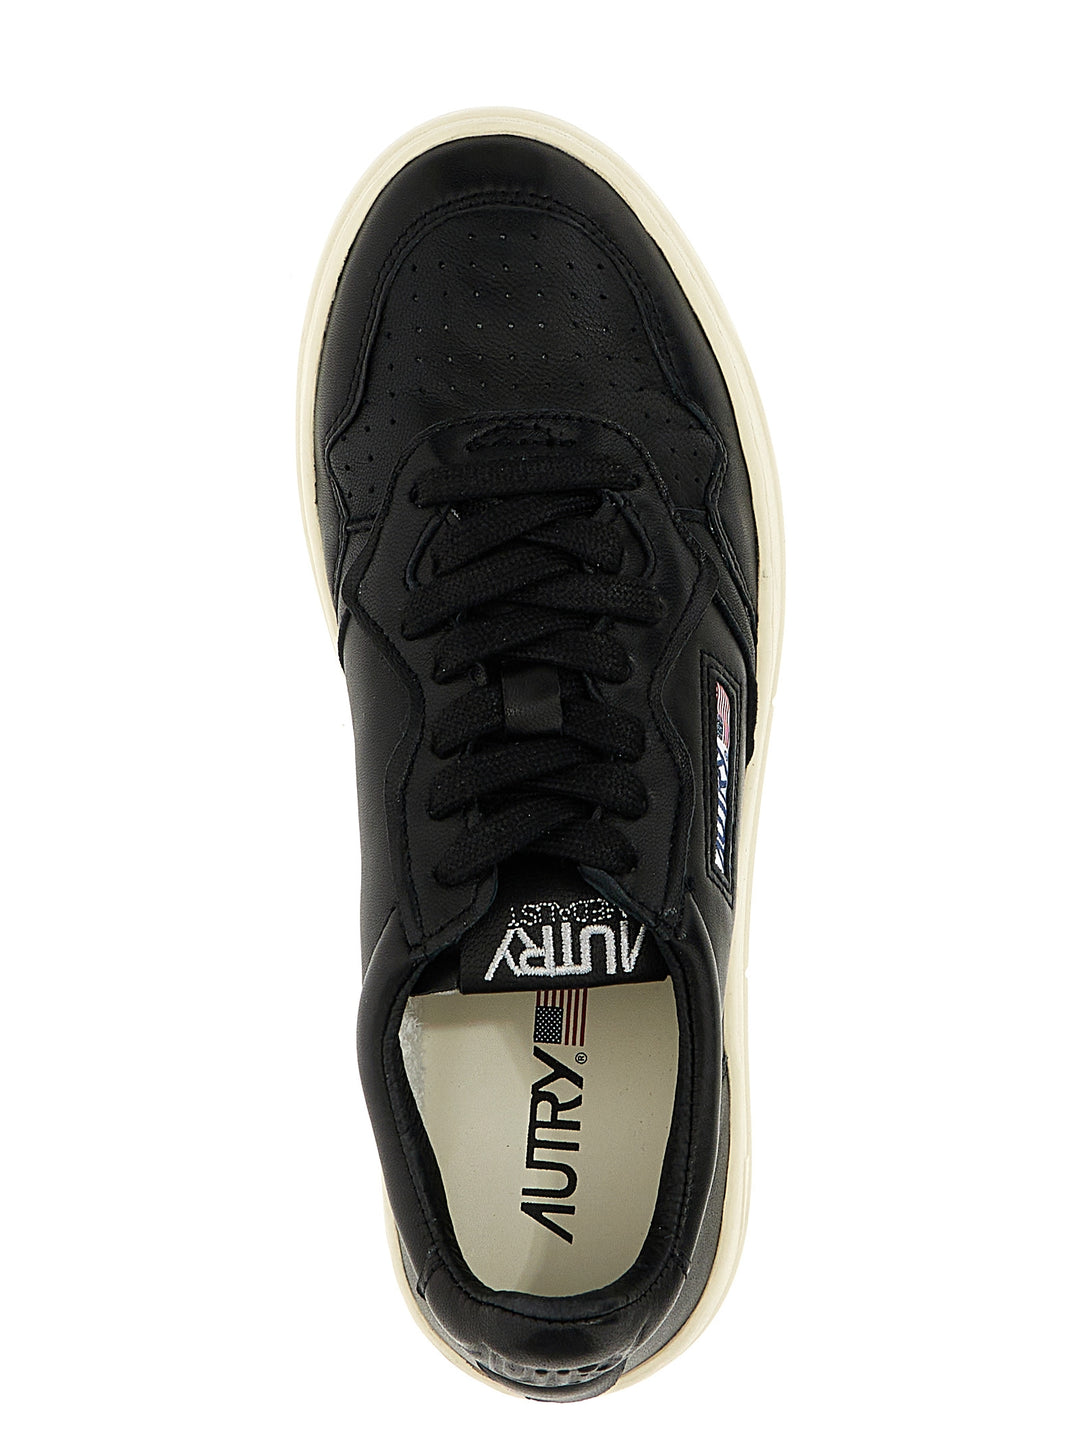 Autry 01 Sneakers Bianco/Nero